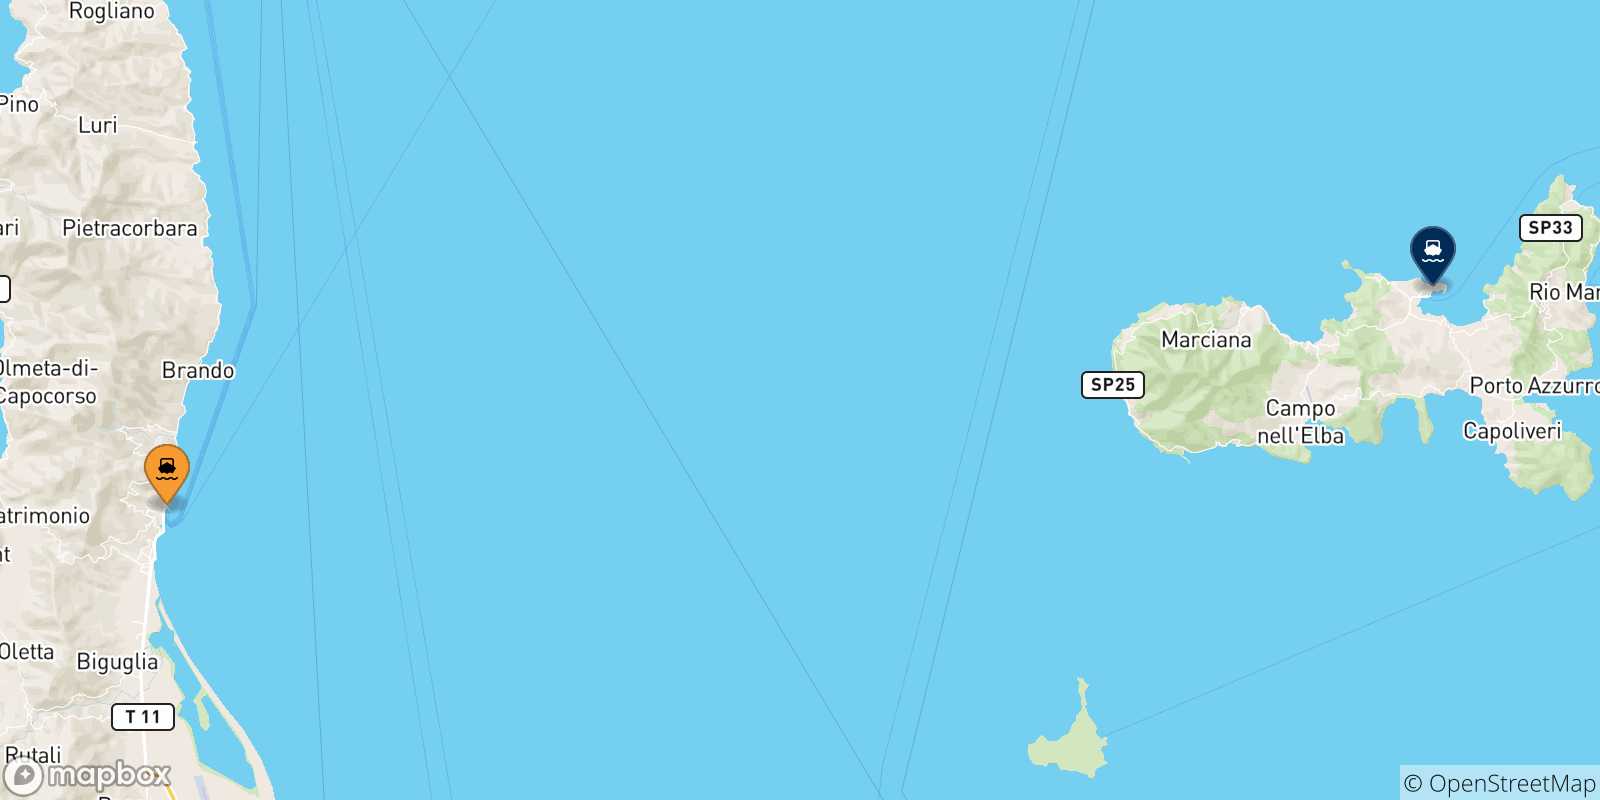 Mappa delle possibili rotte tra la Francia e l'Isola D'elba